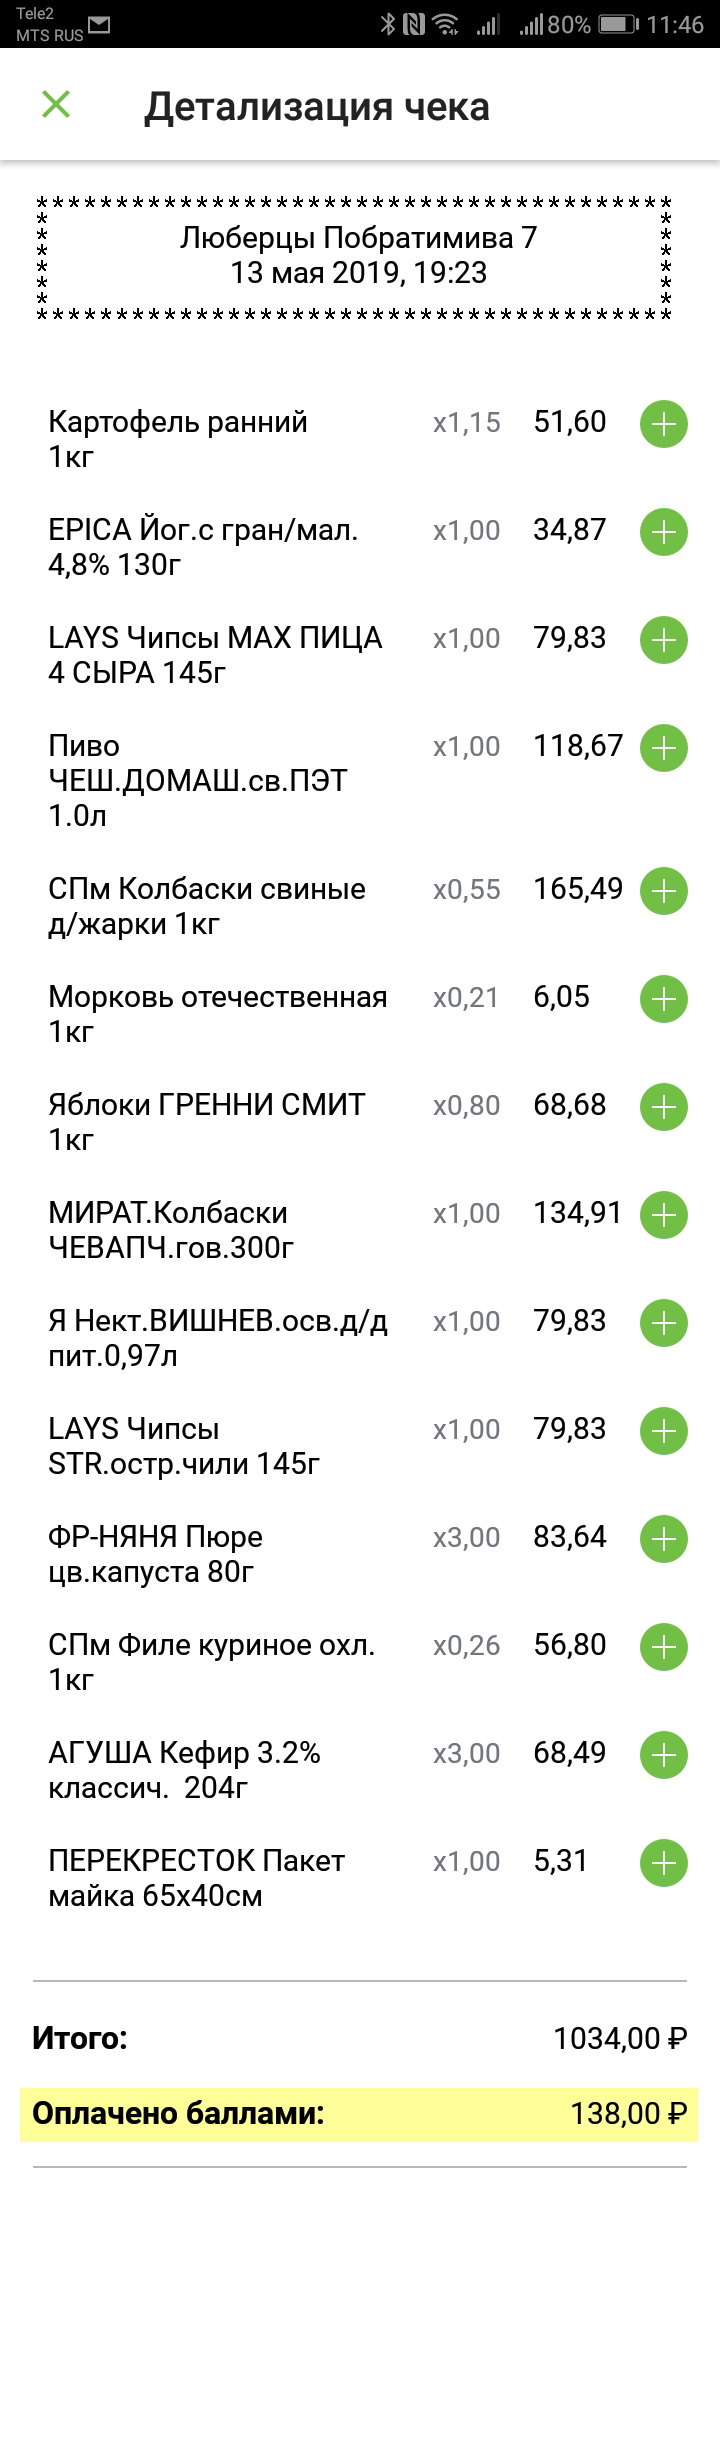 13 мая — 138 <span class=ruble>Р</span>. Всего за последние три месяца я сэкономила с помощью бонусов 1150 <span class=ruble>Р</span>